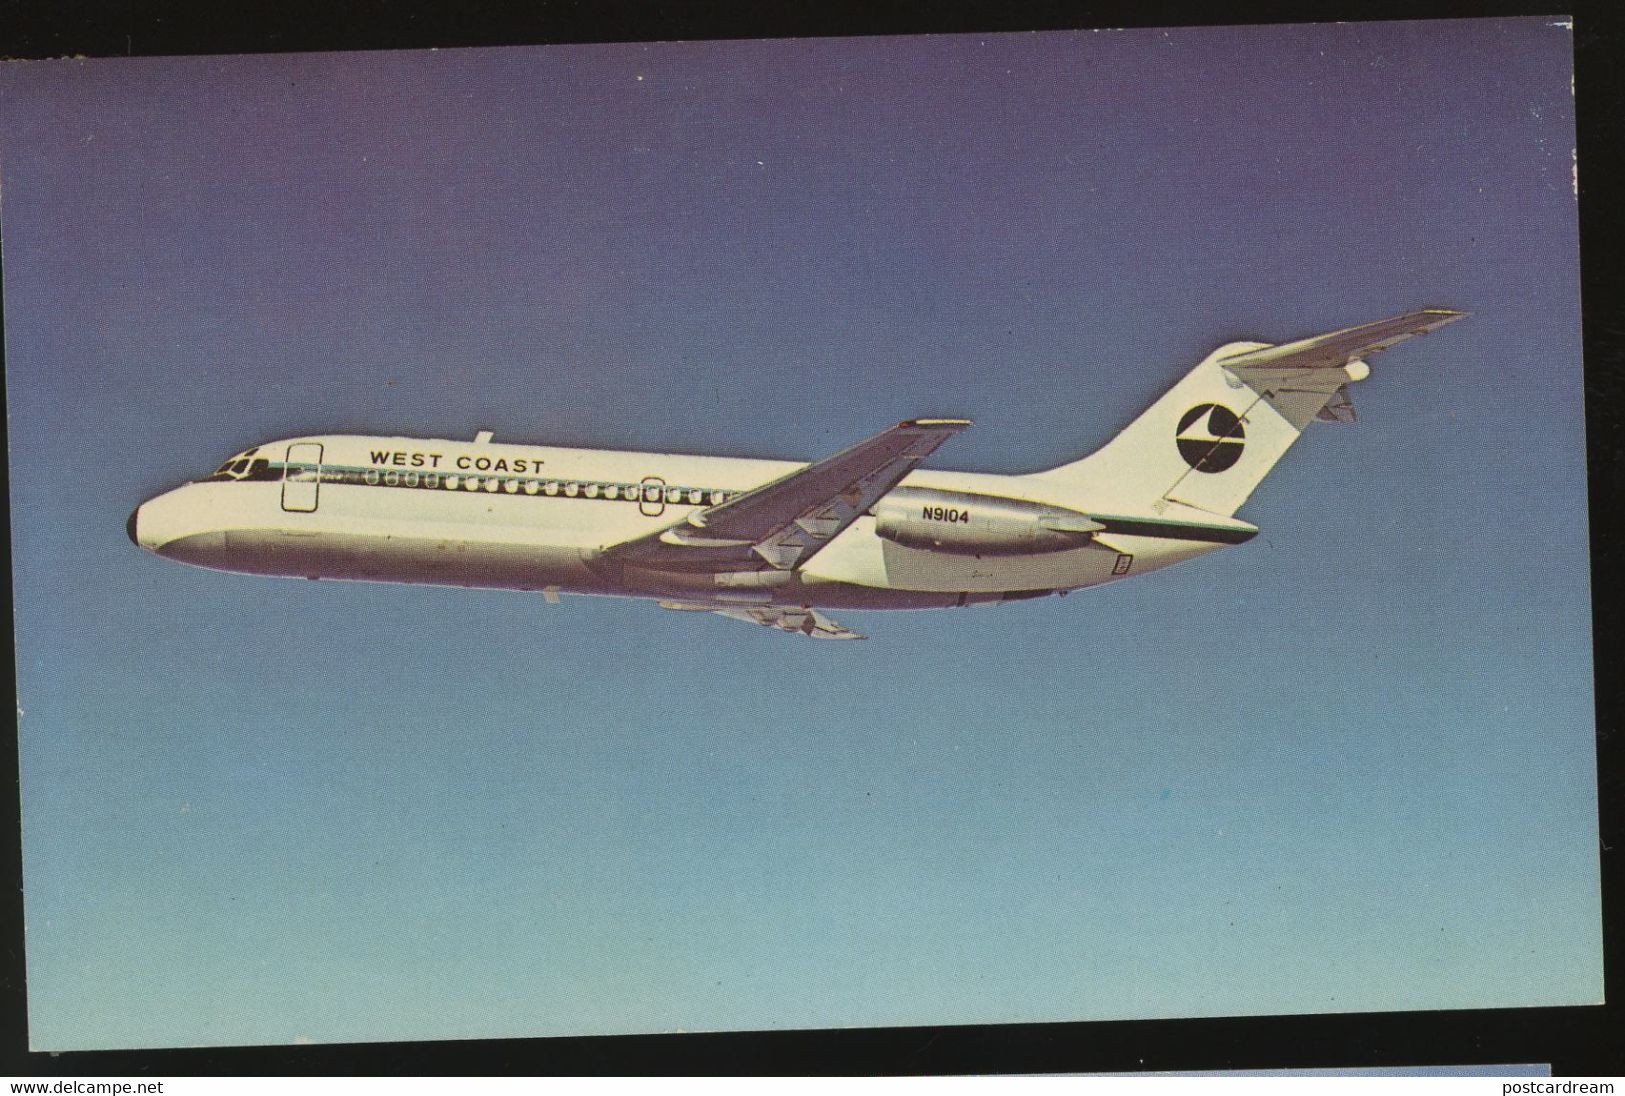 West Coast Airlines McDonnell Douglas DC-9-14 Postcard - Key West & The Keys